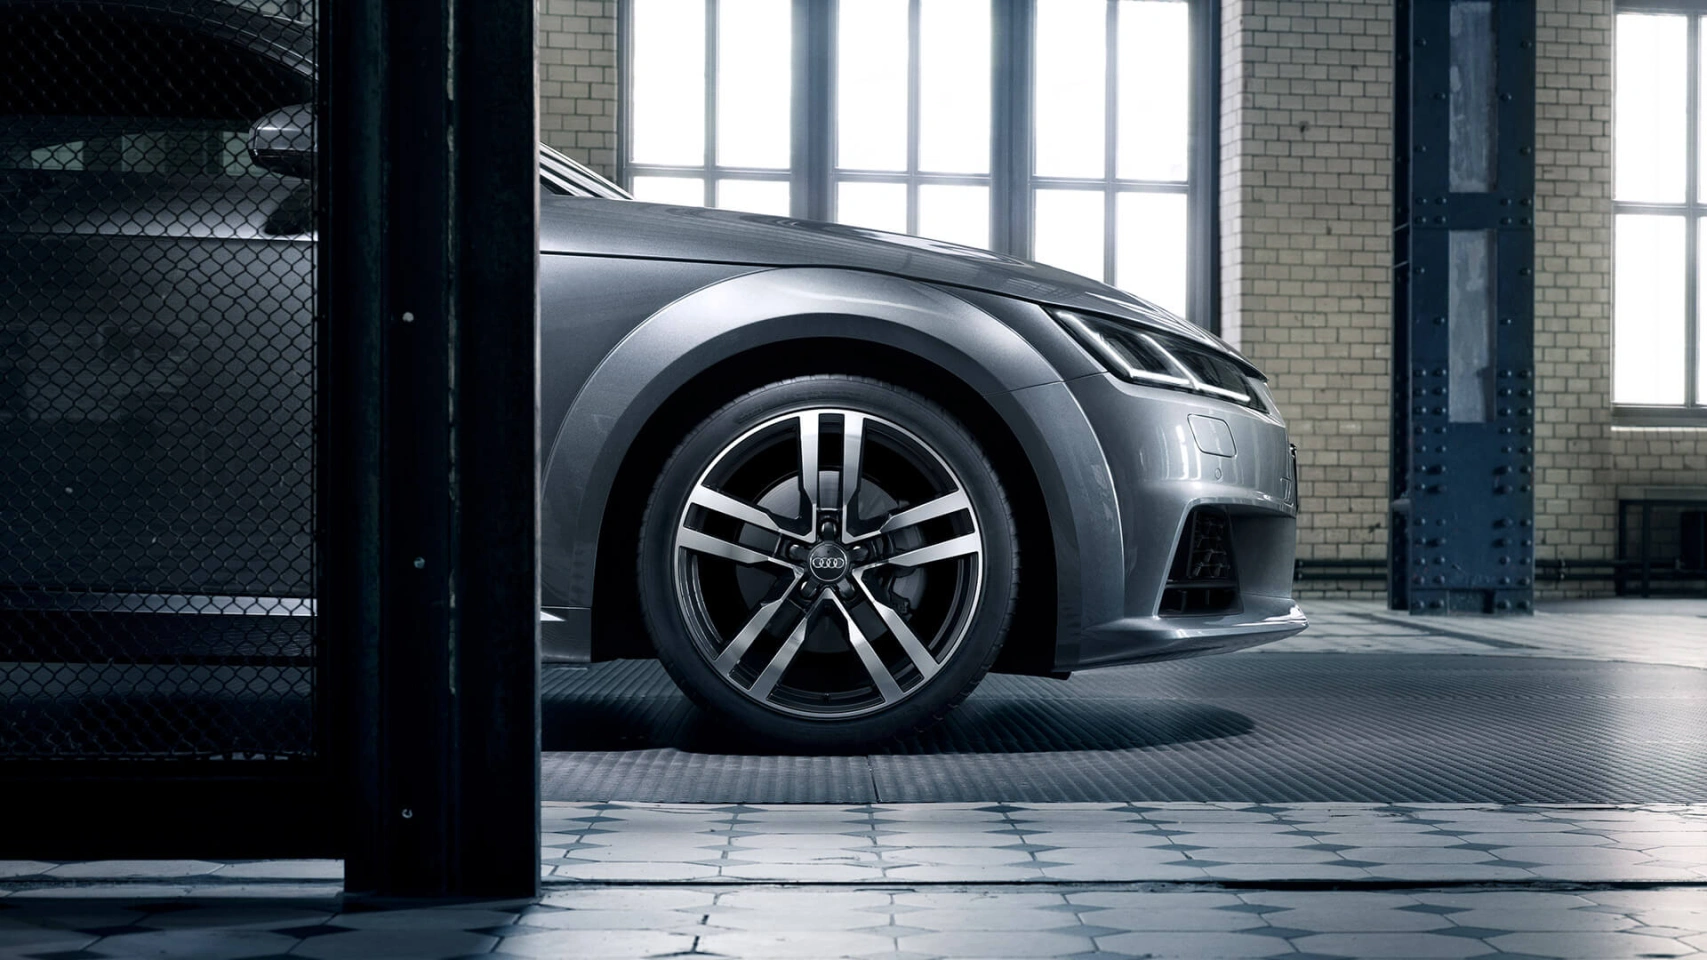 De Audi TT Coupé is standaard uitgerust met Audi drive select, een systeem om de rijdynamiek in te stellen en daarmee de rijbeleving te bepalen.